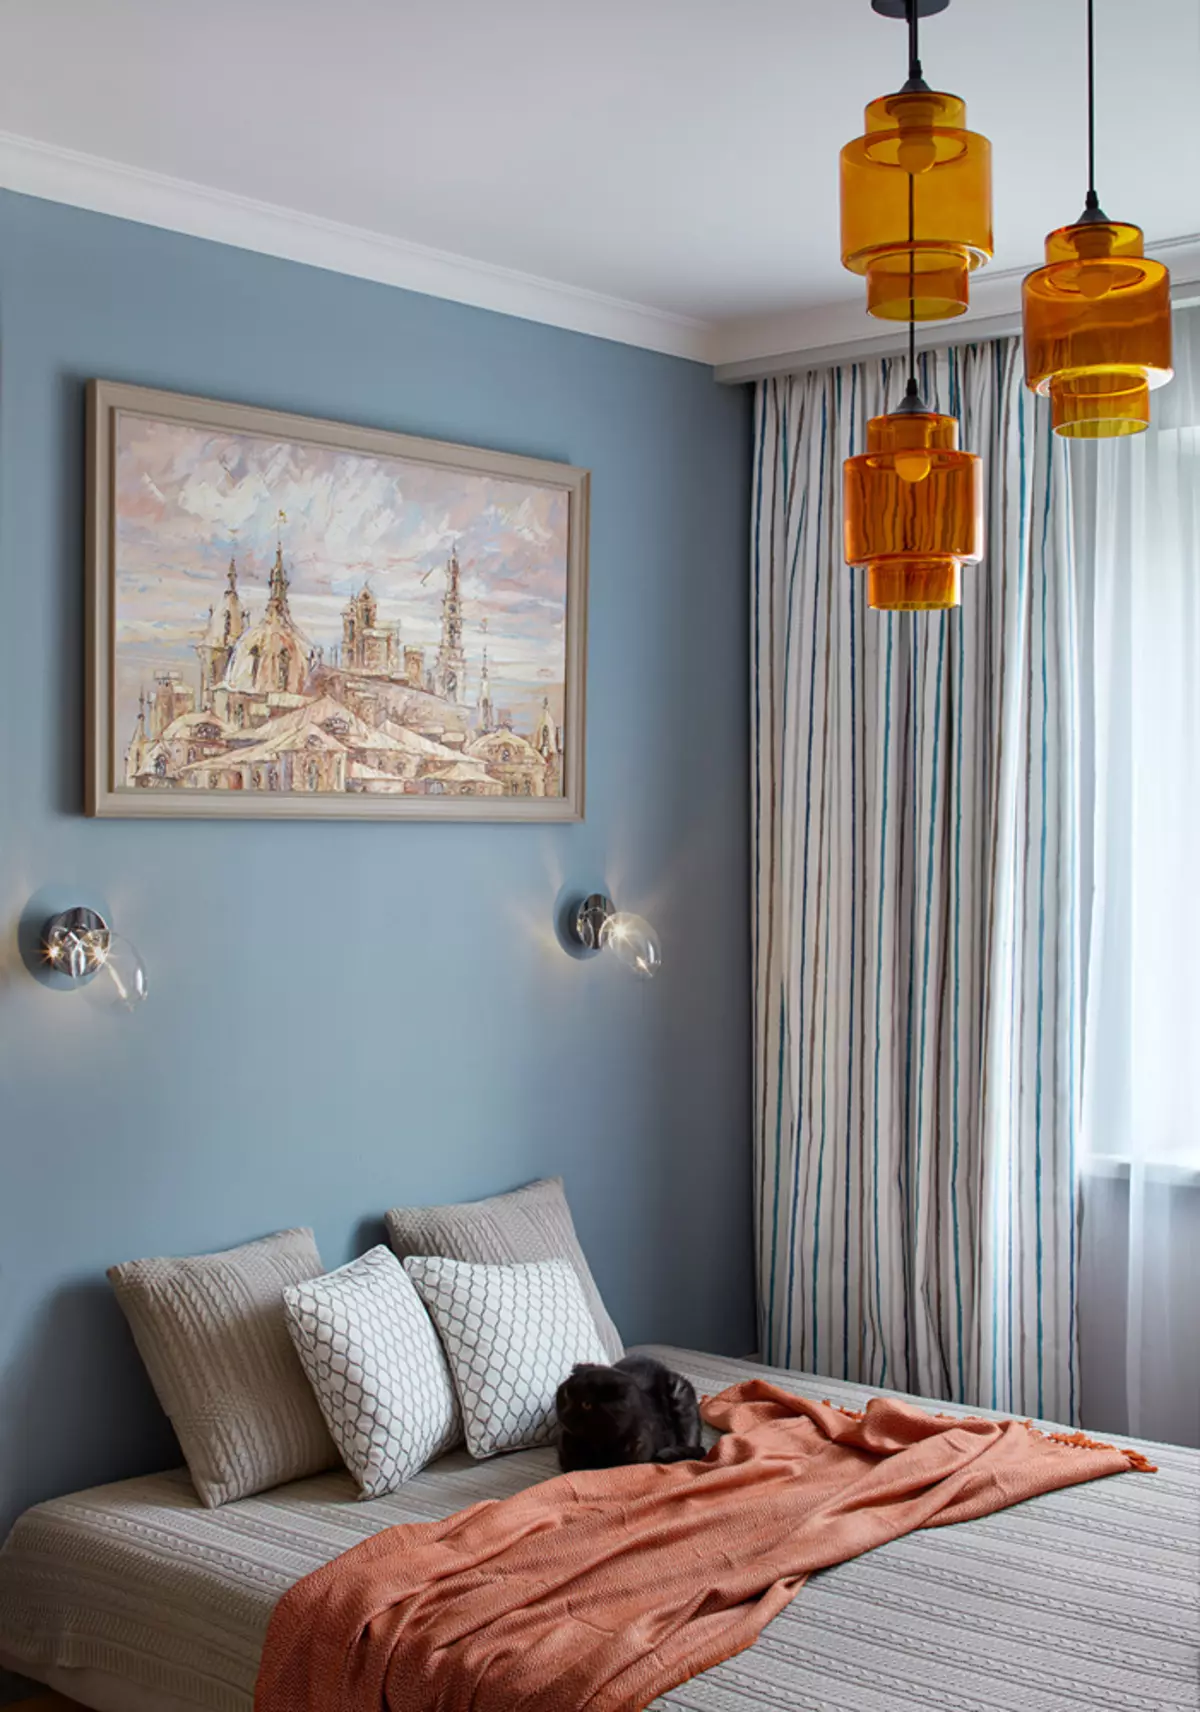 Apartament confortabil: interior luminos în stil ecologic pentru mamă și fiică